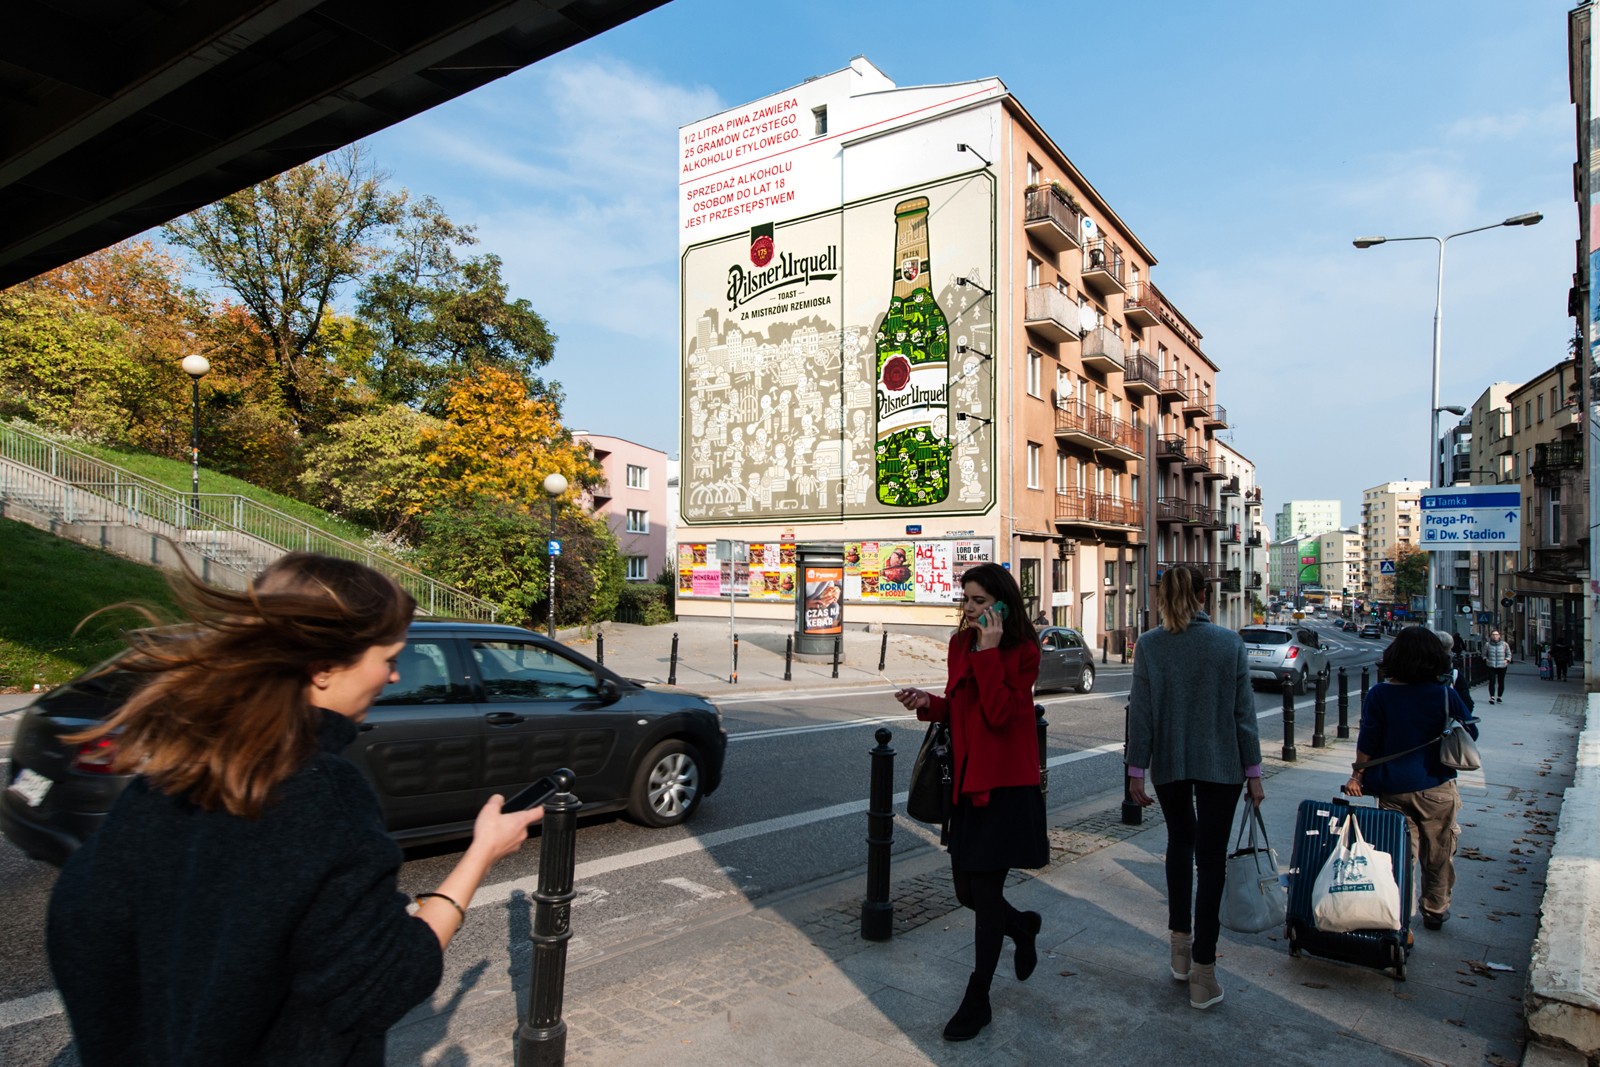 Tamka street in Warsaw advertising mural pilsner urquell | Pilsner Urquell | Portfolio